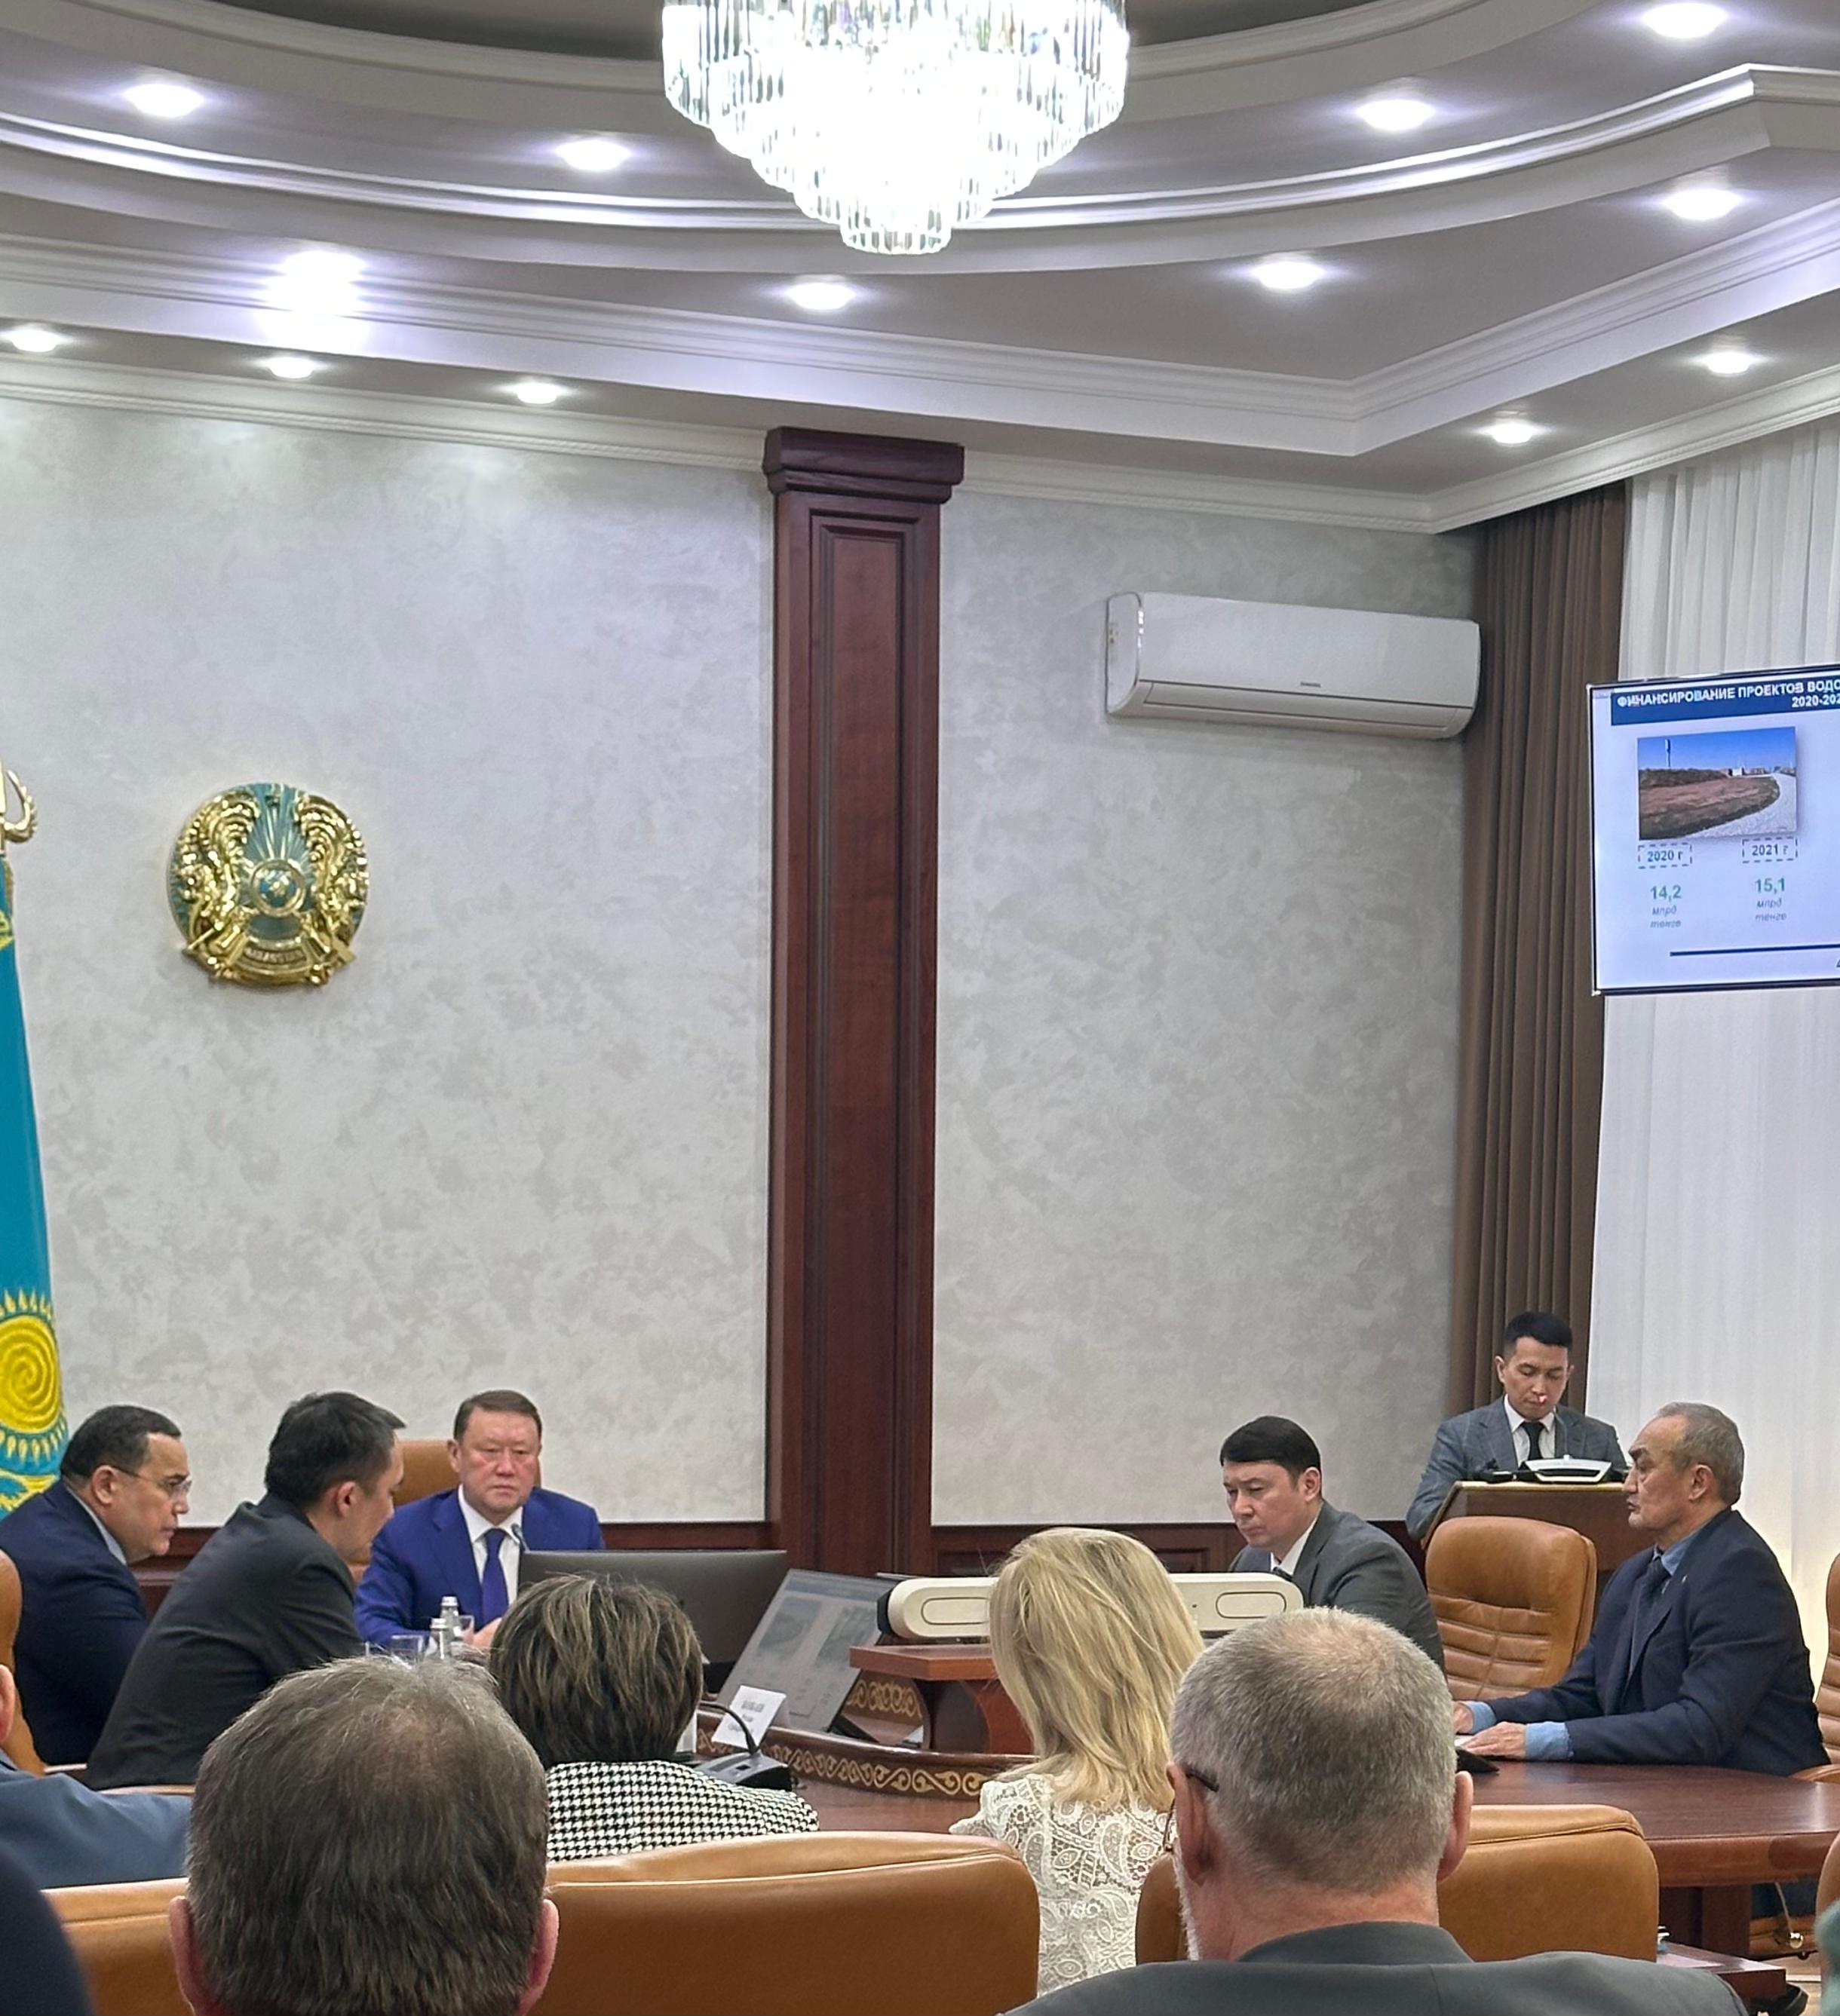 12 марта текущего года под председательством акима области К. Аксакалова состоялось заседание коллегии управления энергетики и ЖКХ.